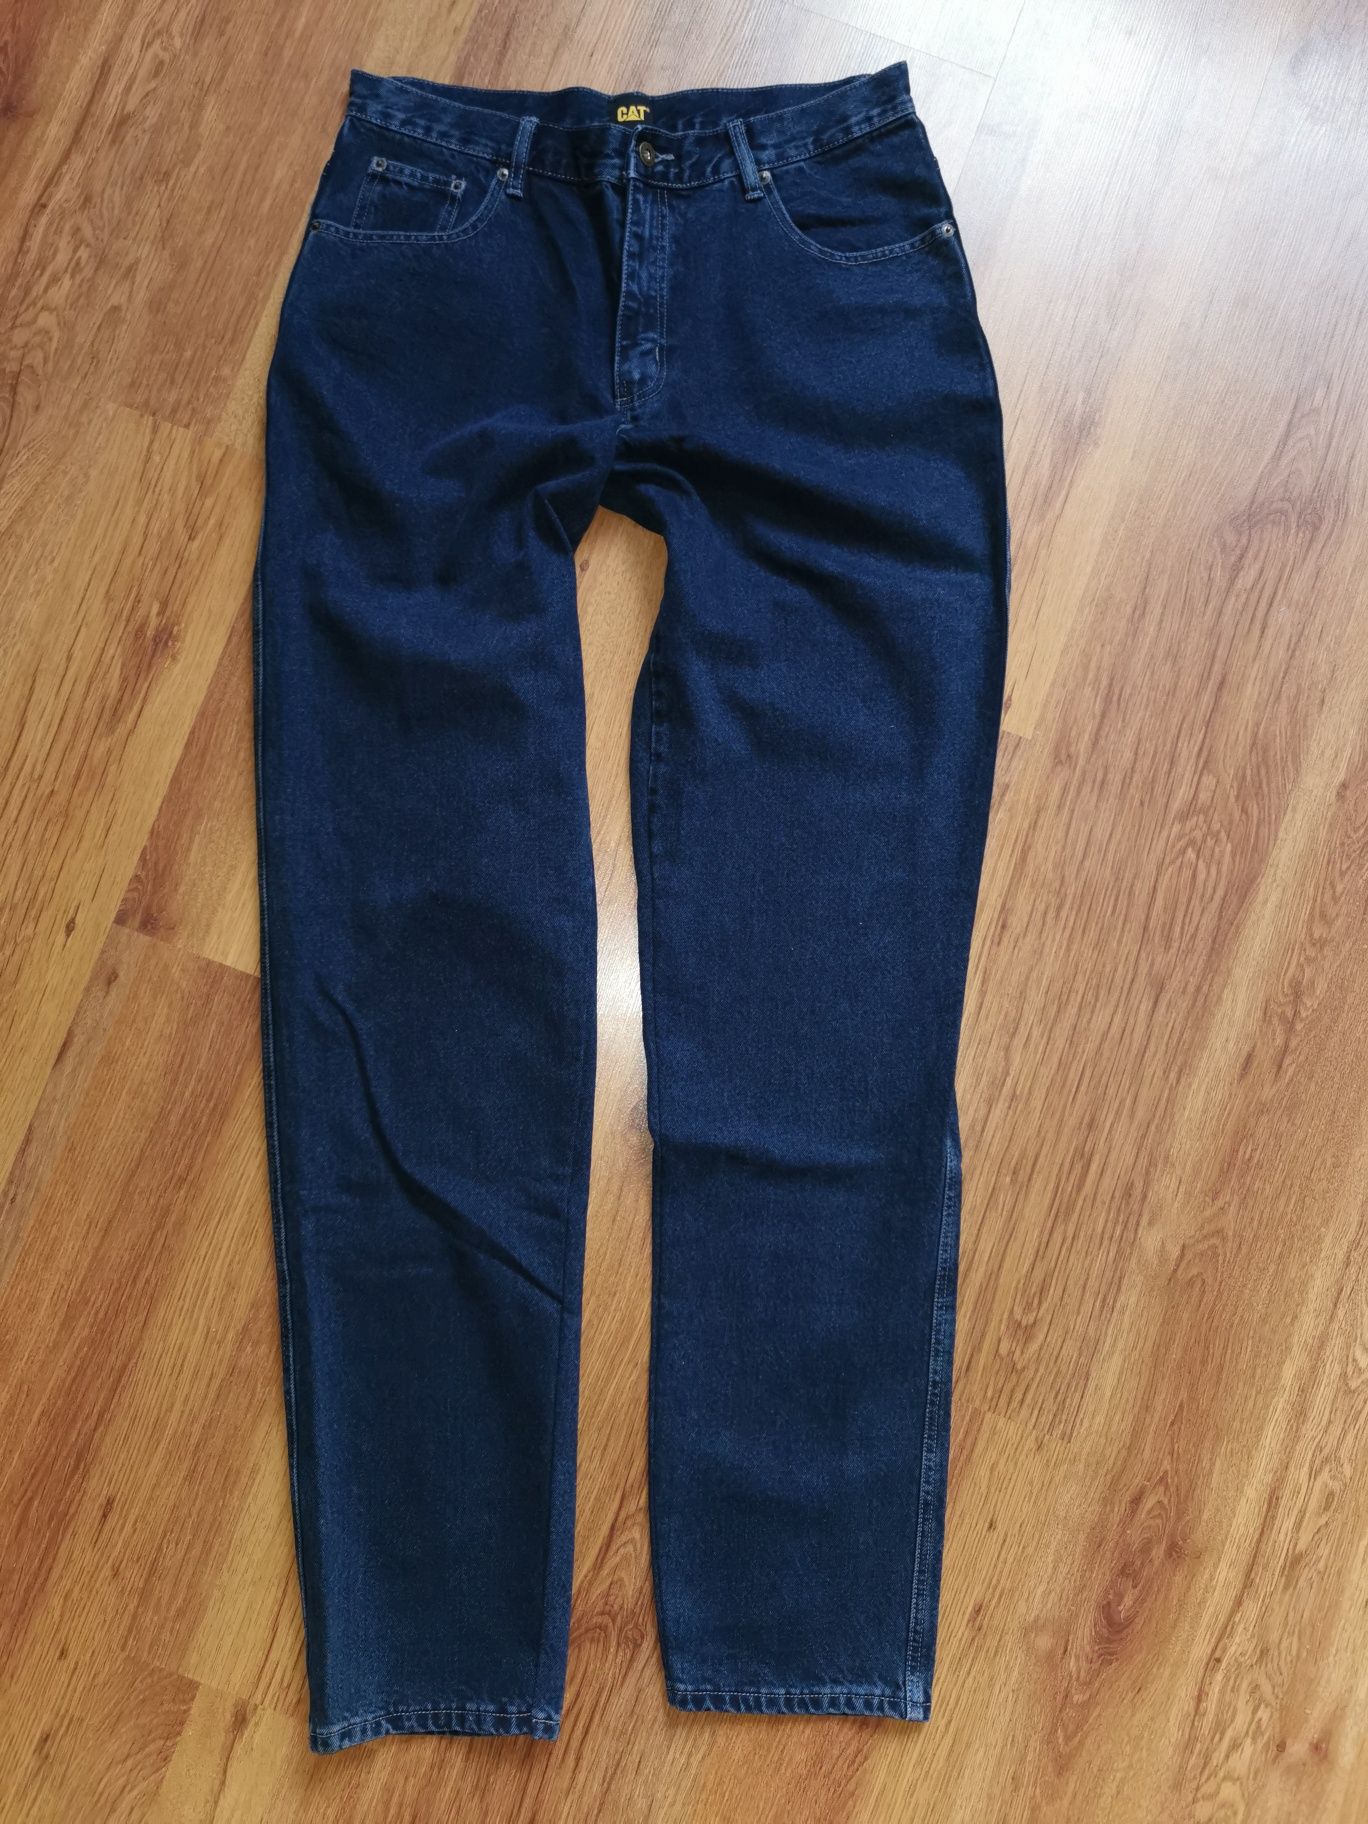 Cat Caterpillar spodnie jeansowe jeansy W34 L36